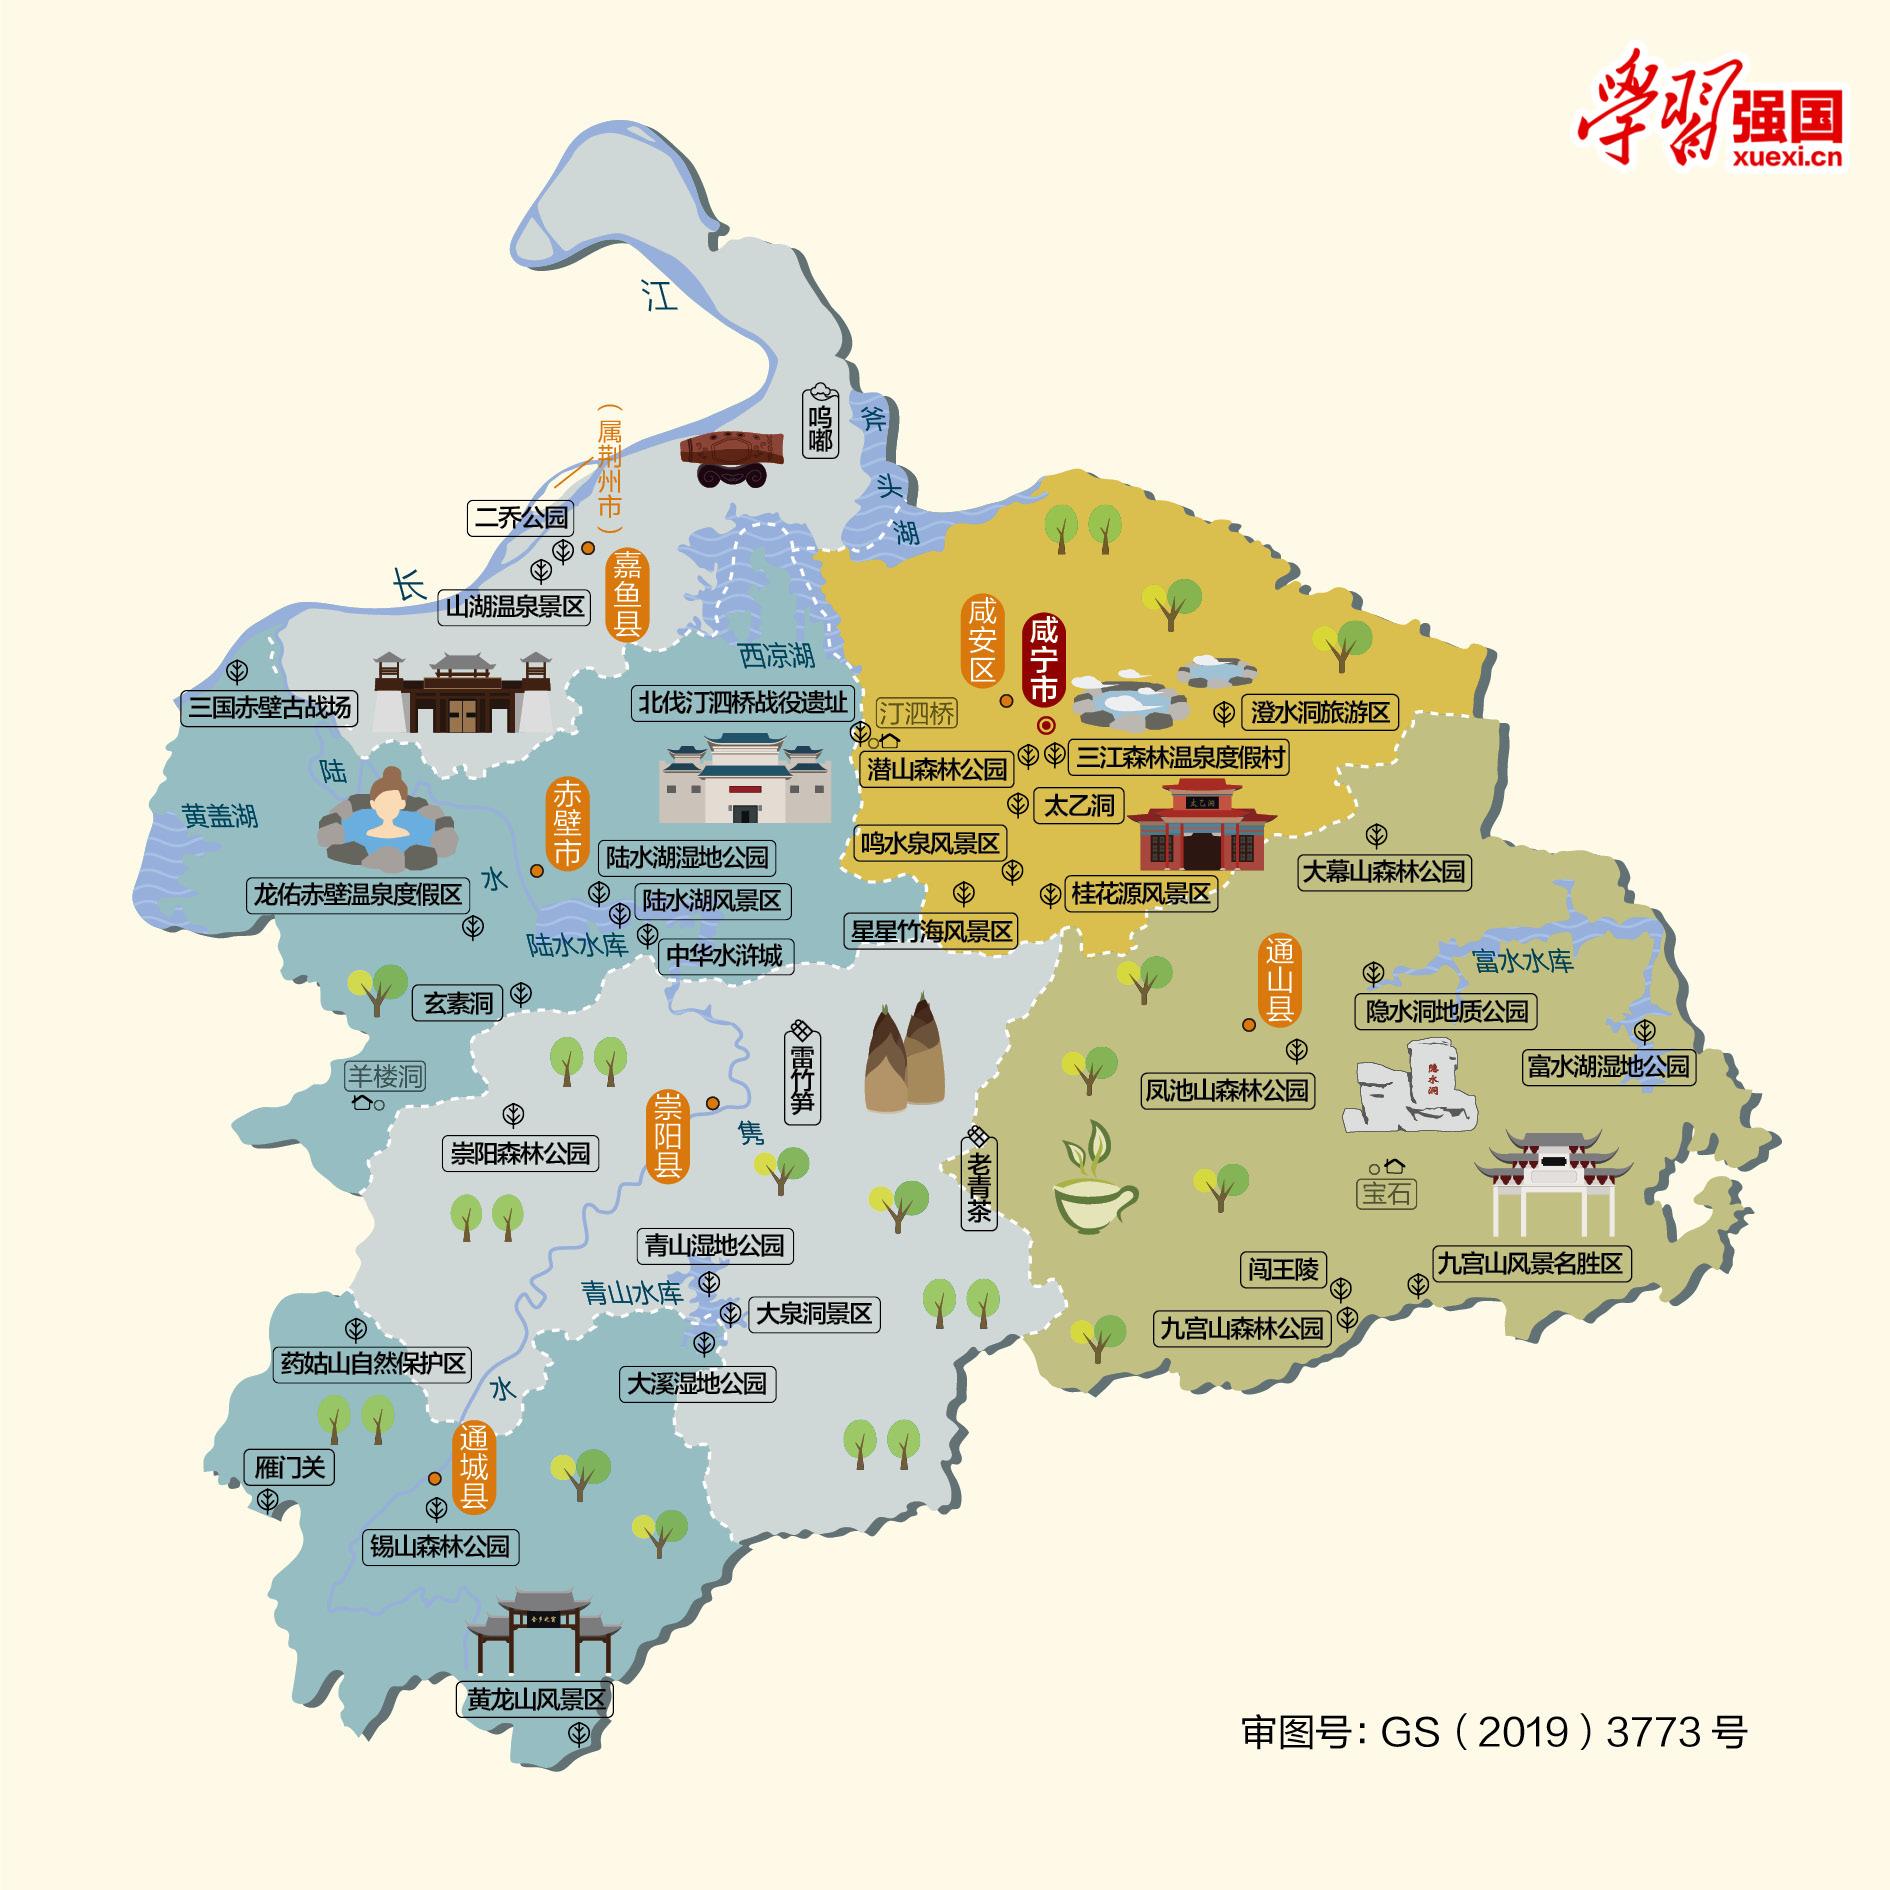 7,咸宁市人文地图和情况介绍